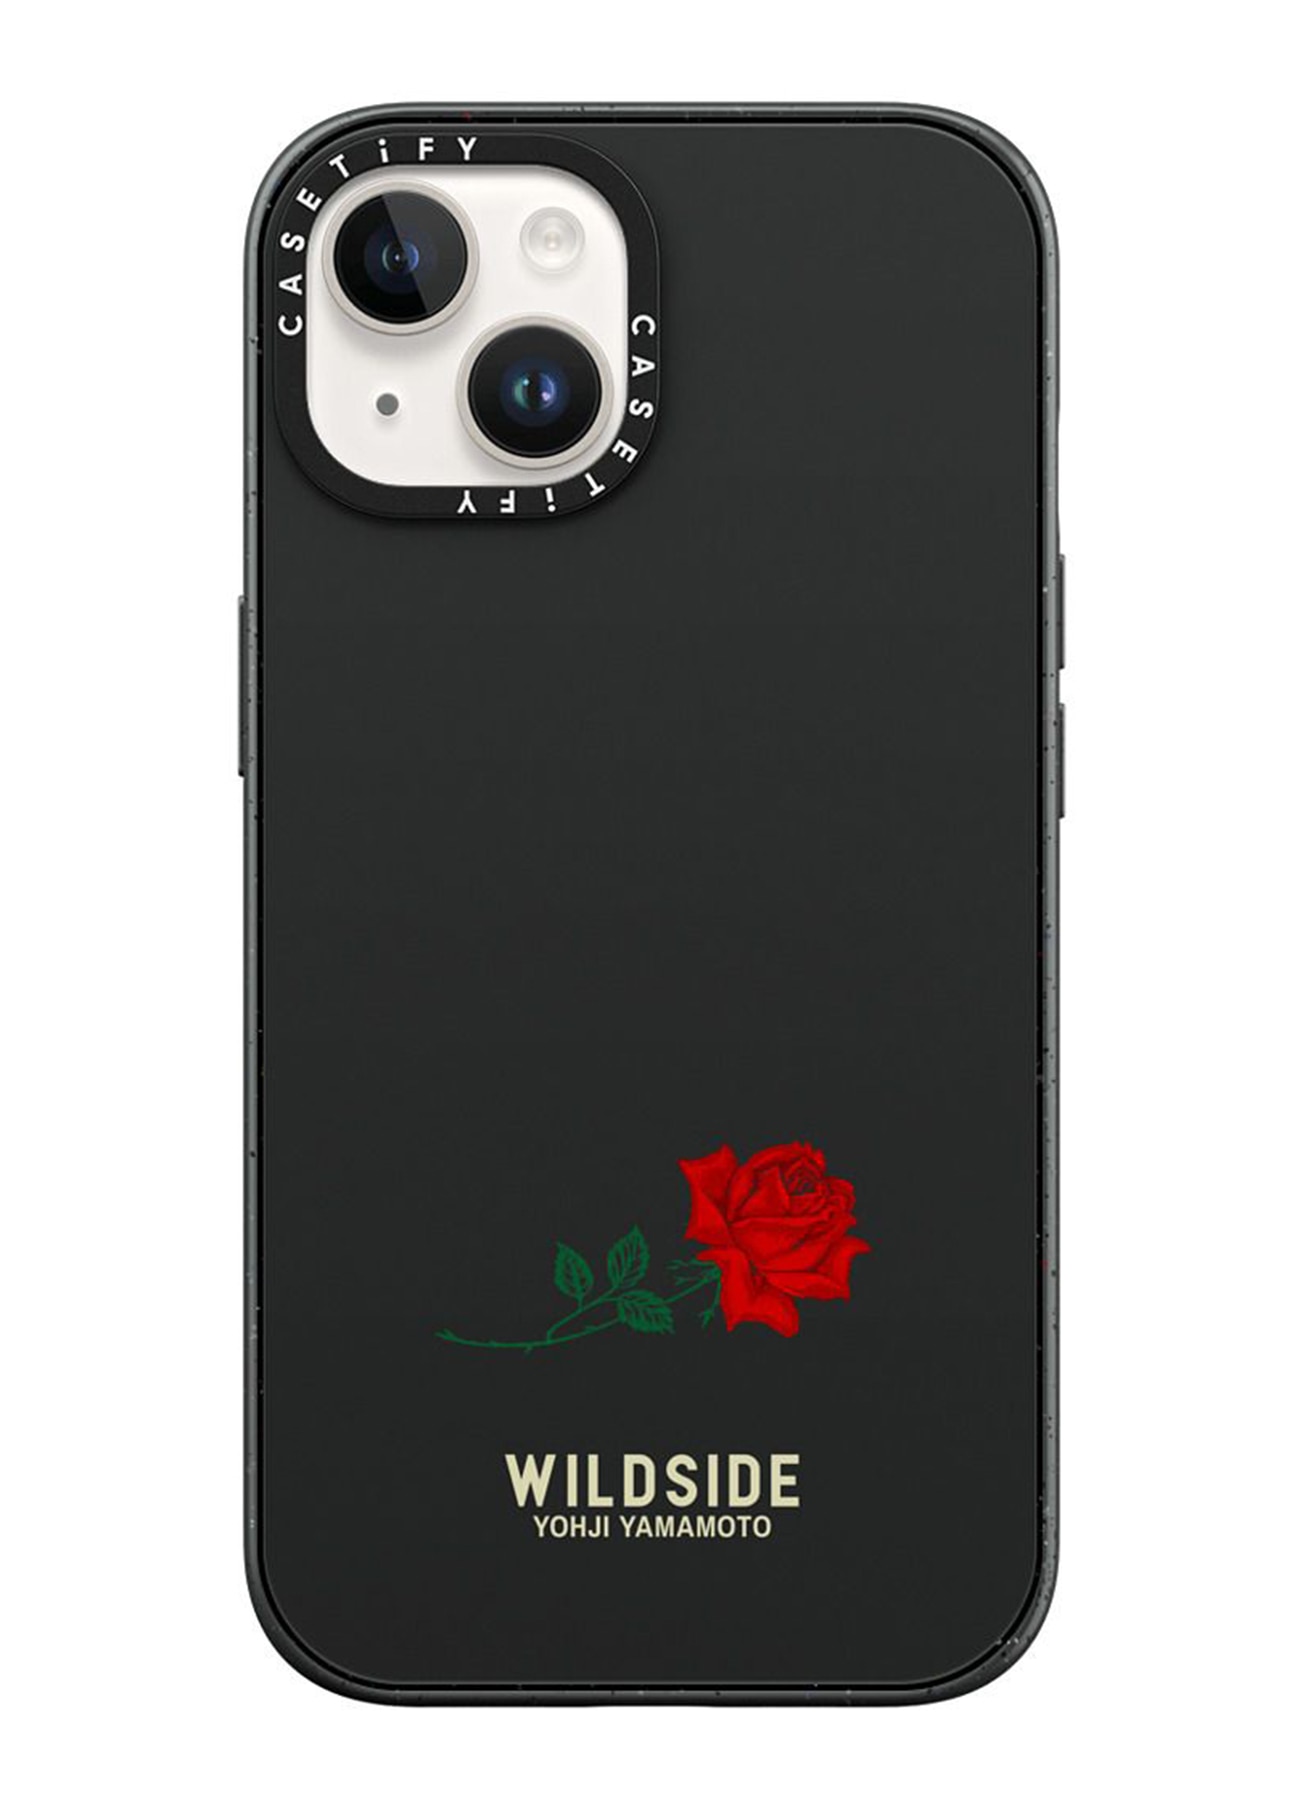 WILDSIDE x CASETiFY ROSE iPhone case (Matte Black)